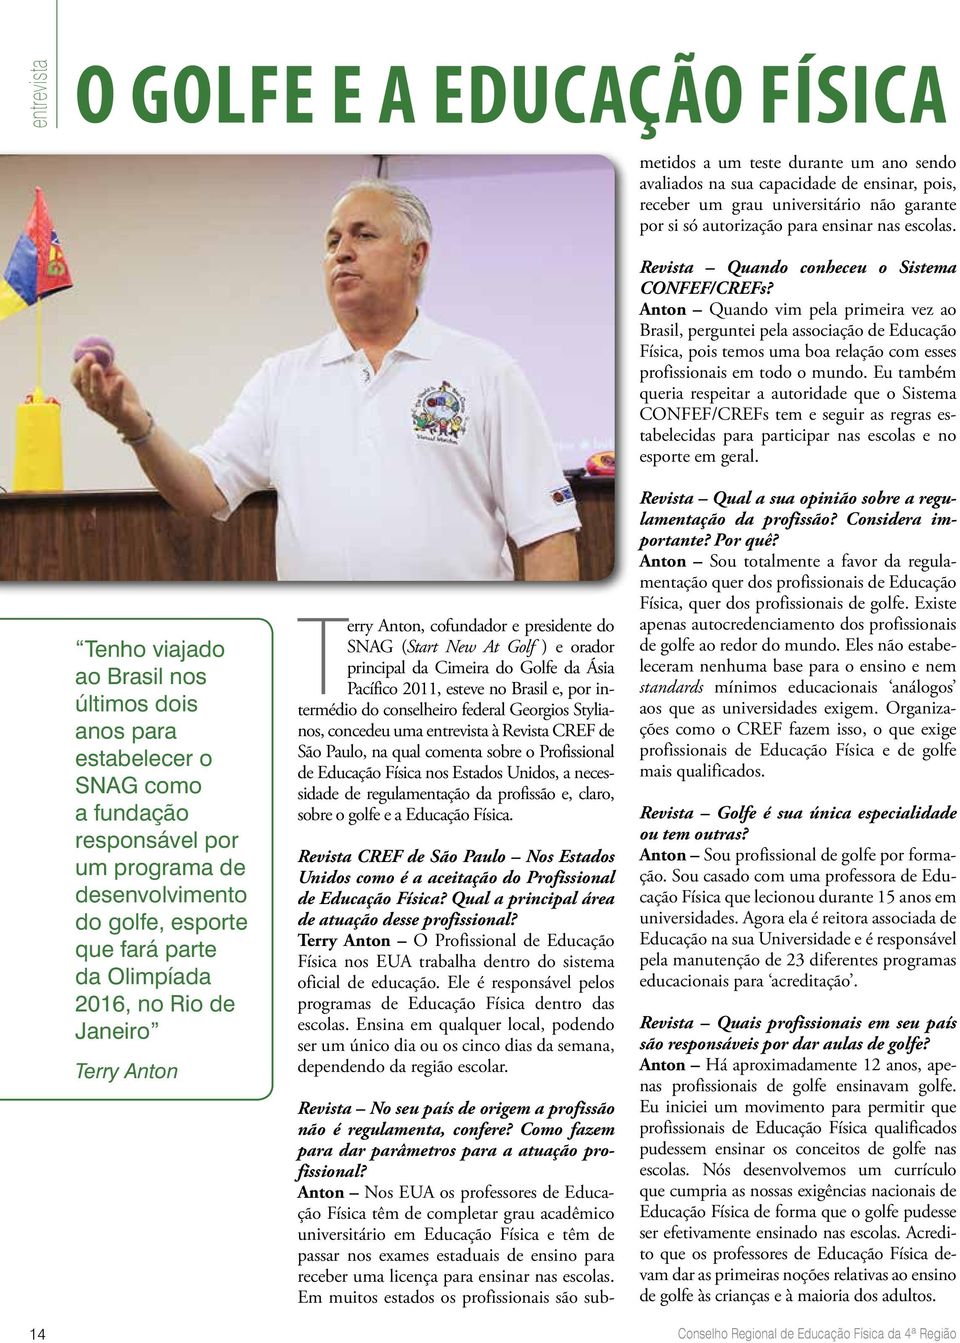 e, por intermédio do conselheiro federal Georgios Stylianos, concedeu uma entrevista à Revista CREF de São Paulo, na qual comenta sobre o Profissional de Educação Física nos Estados Unidos, a